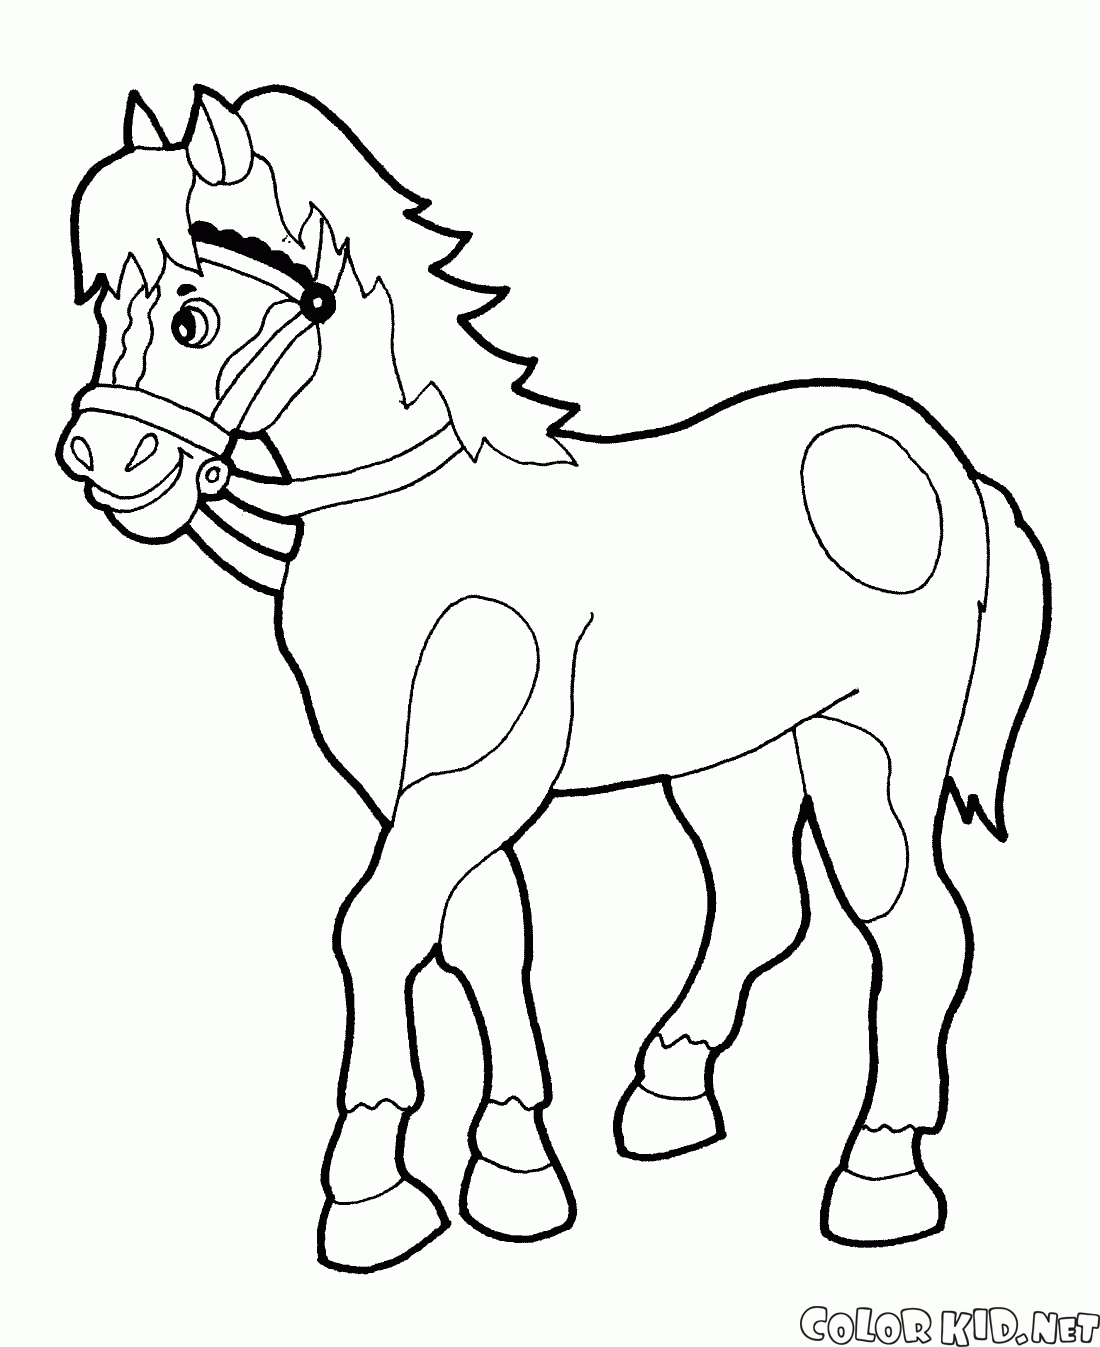 Dibujo para colorear - Paseos a caballo